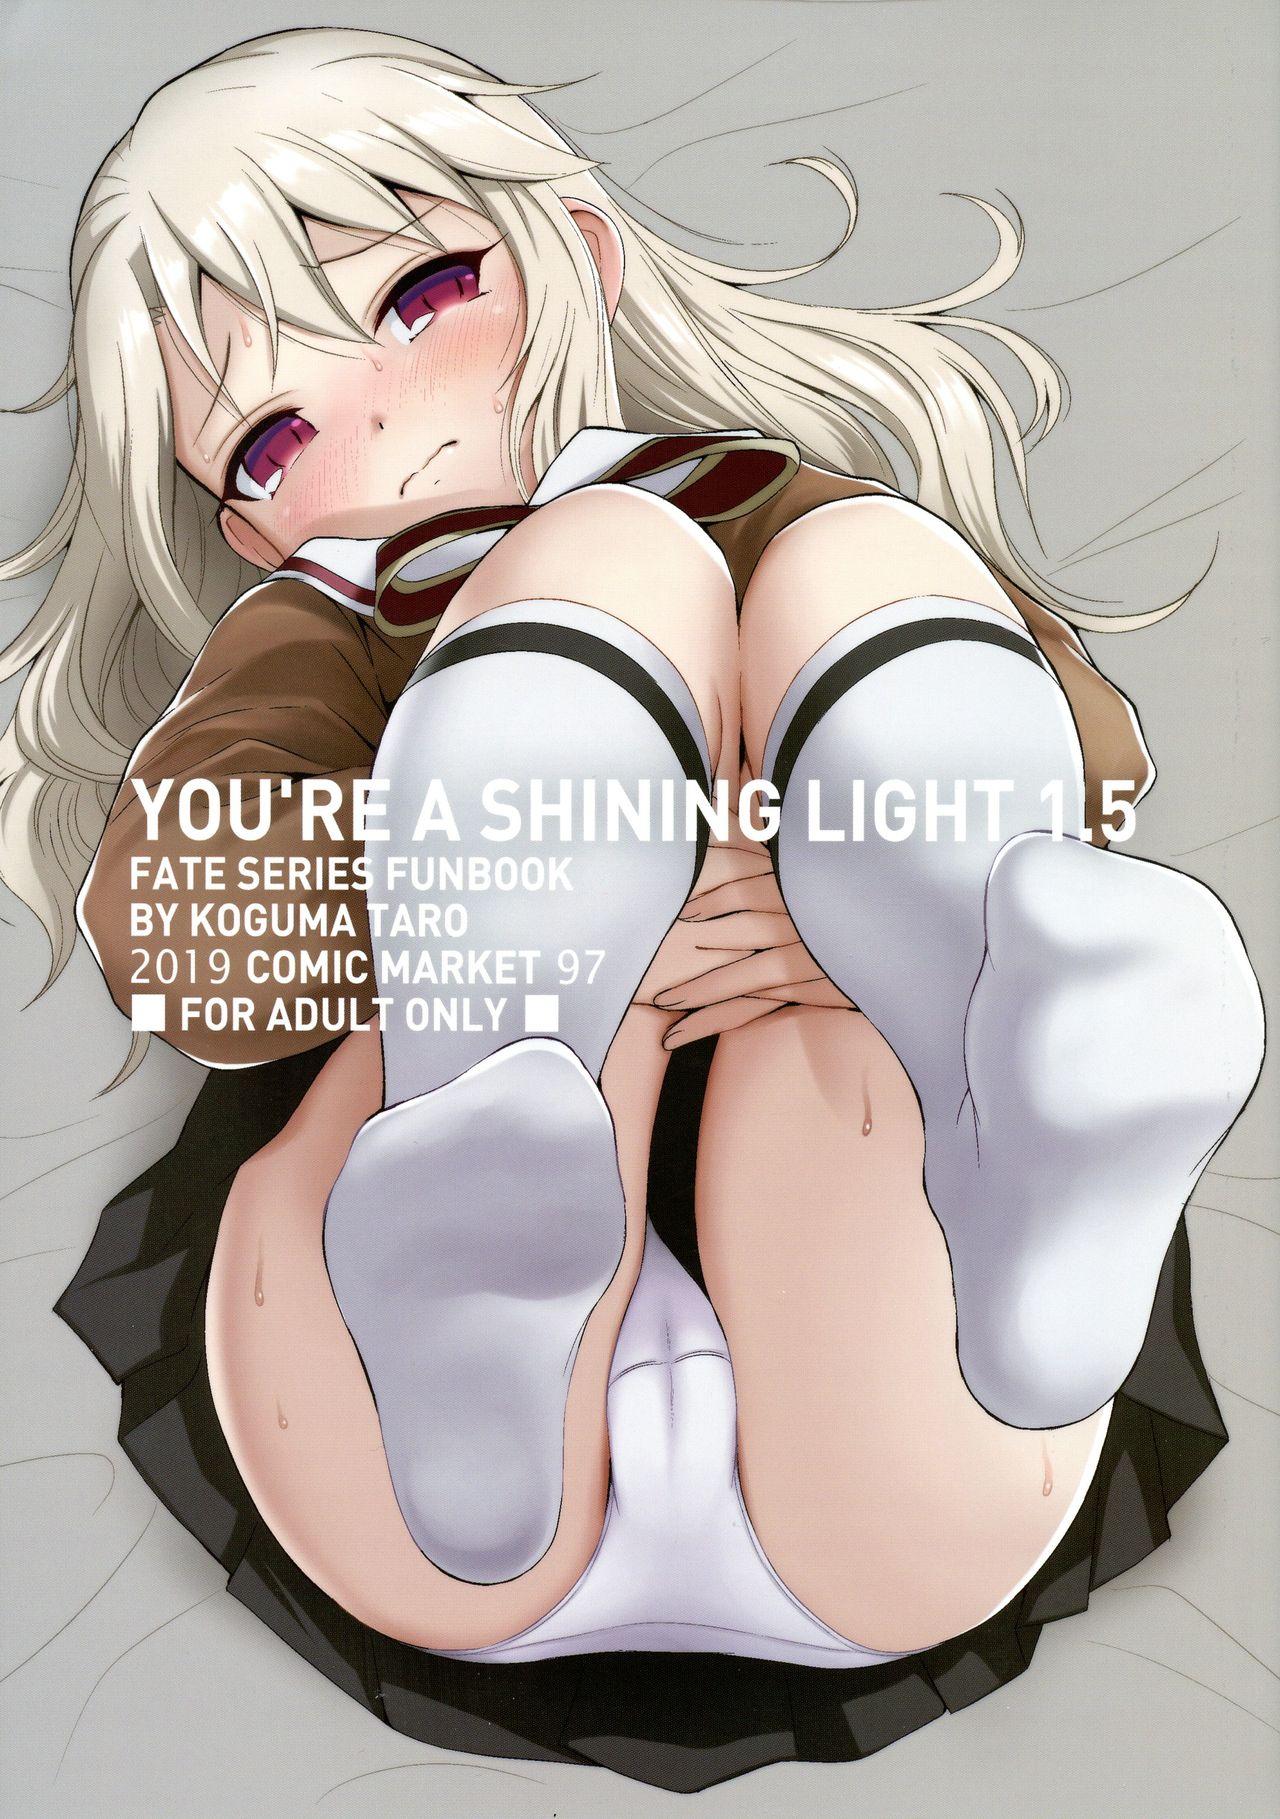 YOU RE A SHINING LIGHT 1.5 0